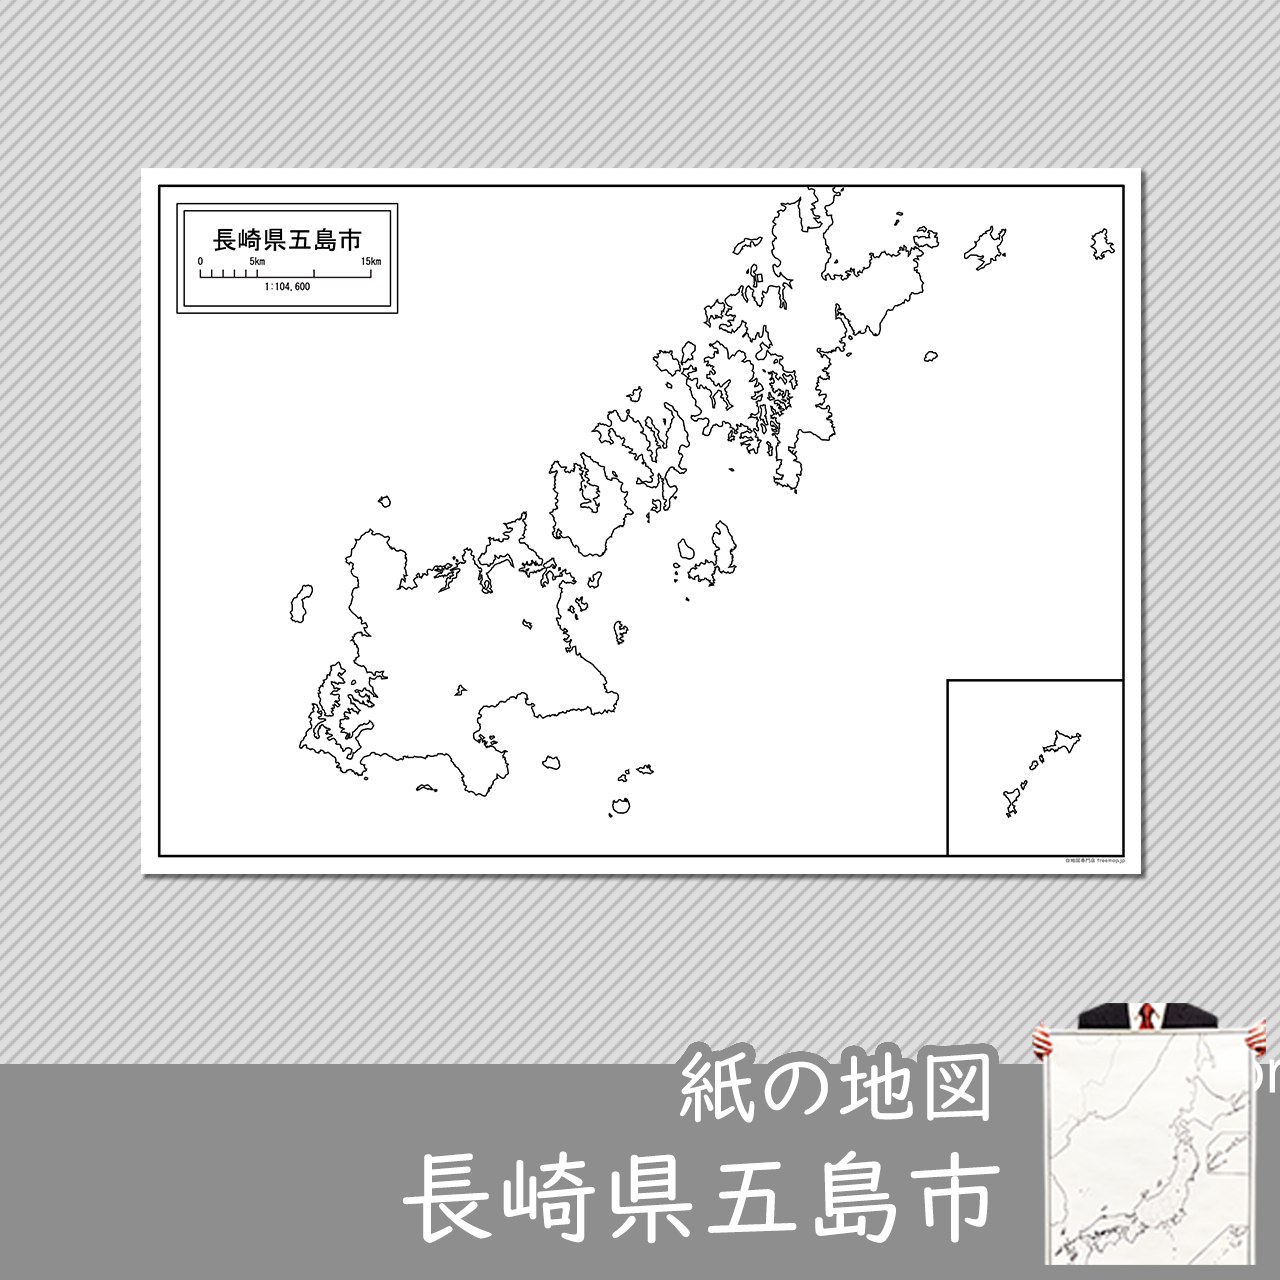 五島市の紙の白地図のサムネイル